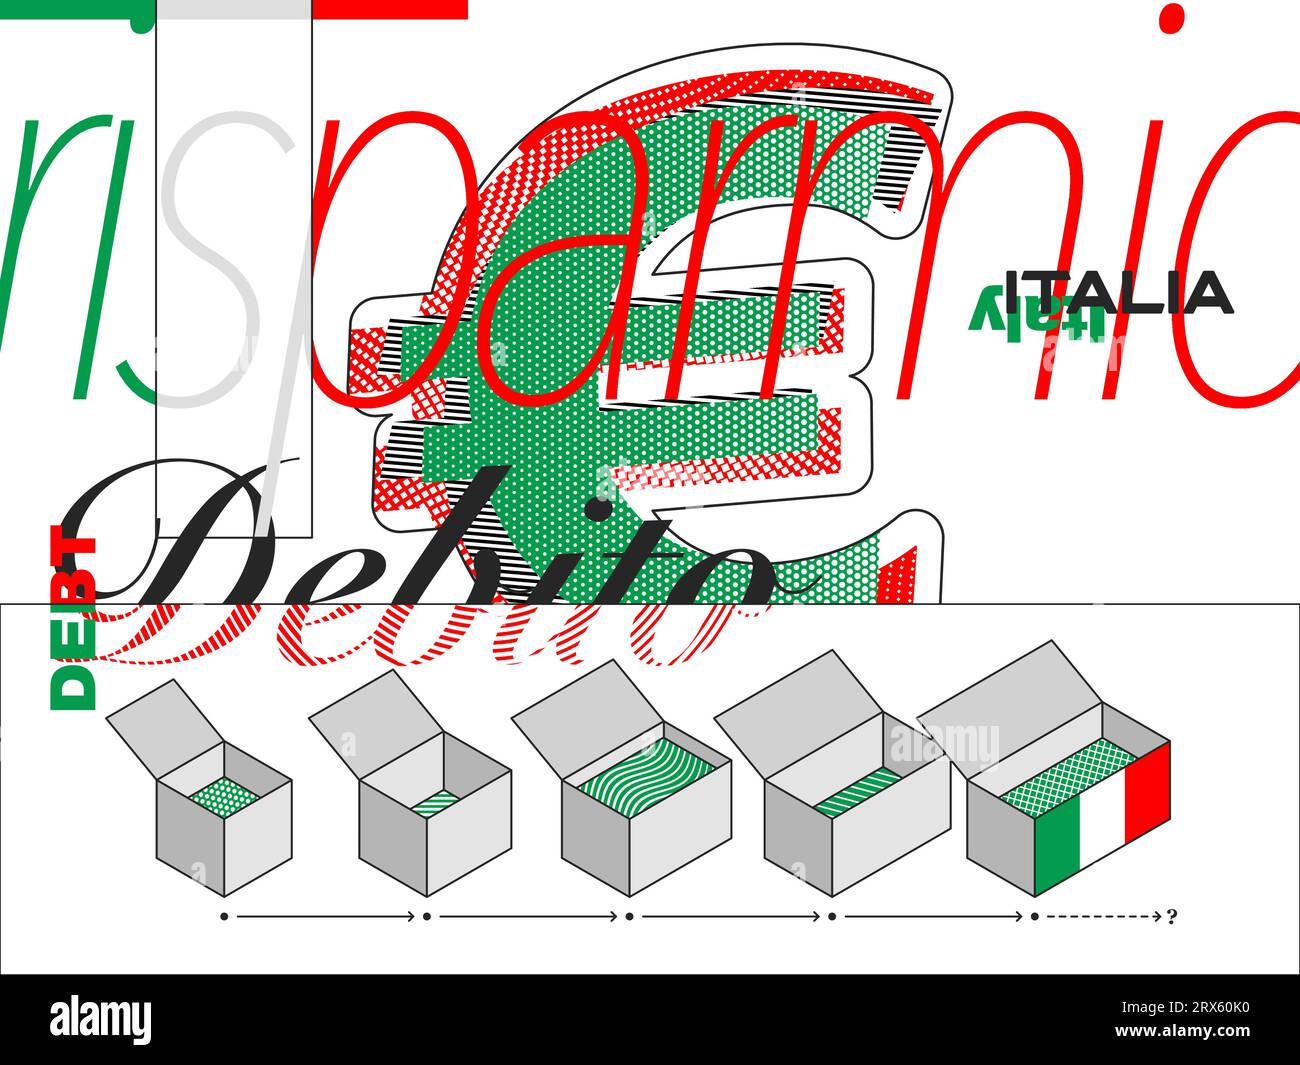 Illustrazione che cattura il debito nazionale italiano, con simboli e motivi minimalistici. Illustrazione Vettoriale